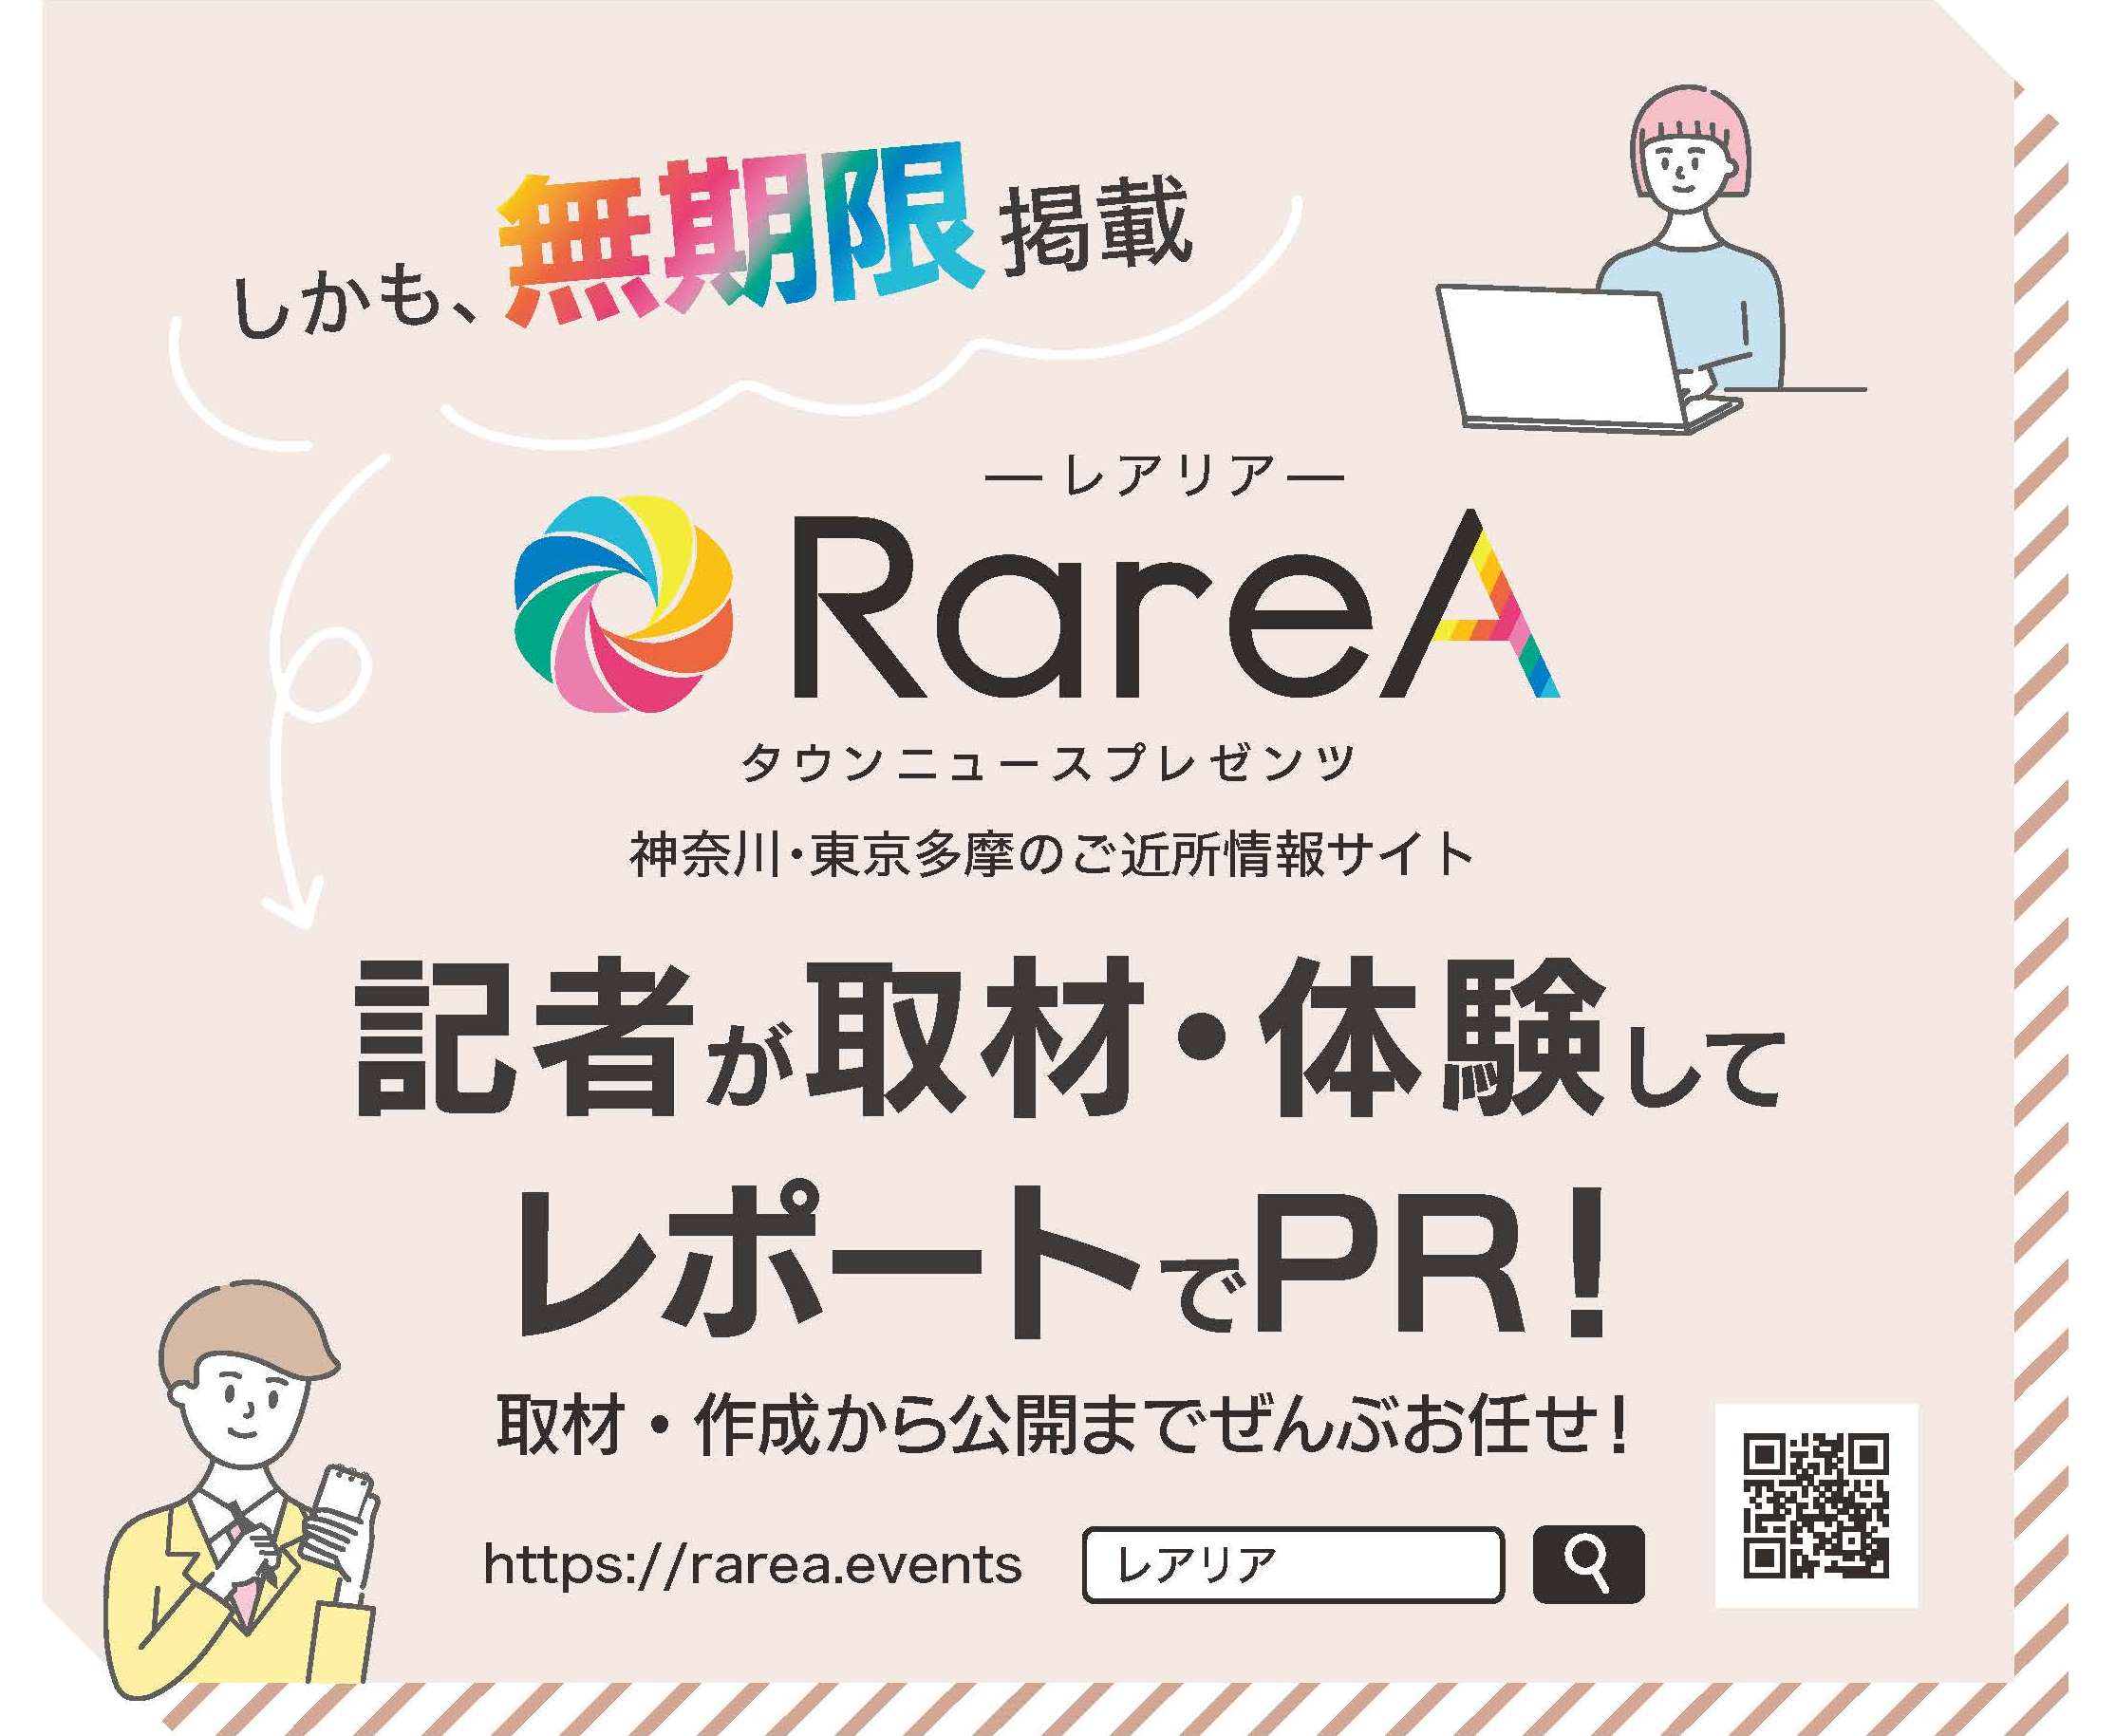 Rarea レアリア でスライド動画を作ろう 作成過程が一目でわかる動画 ナレーションサンプルも 神奈川 東京多摩のご近所情報 レアリア